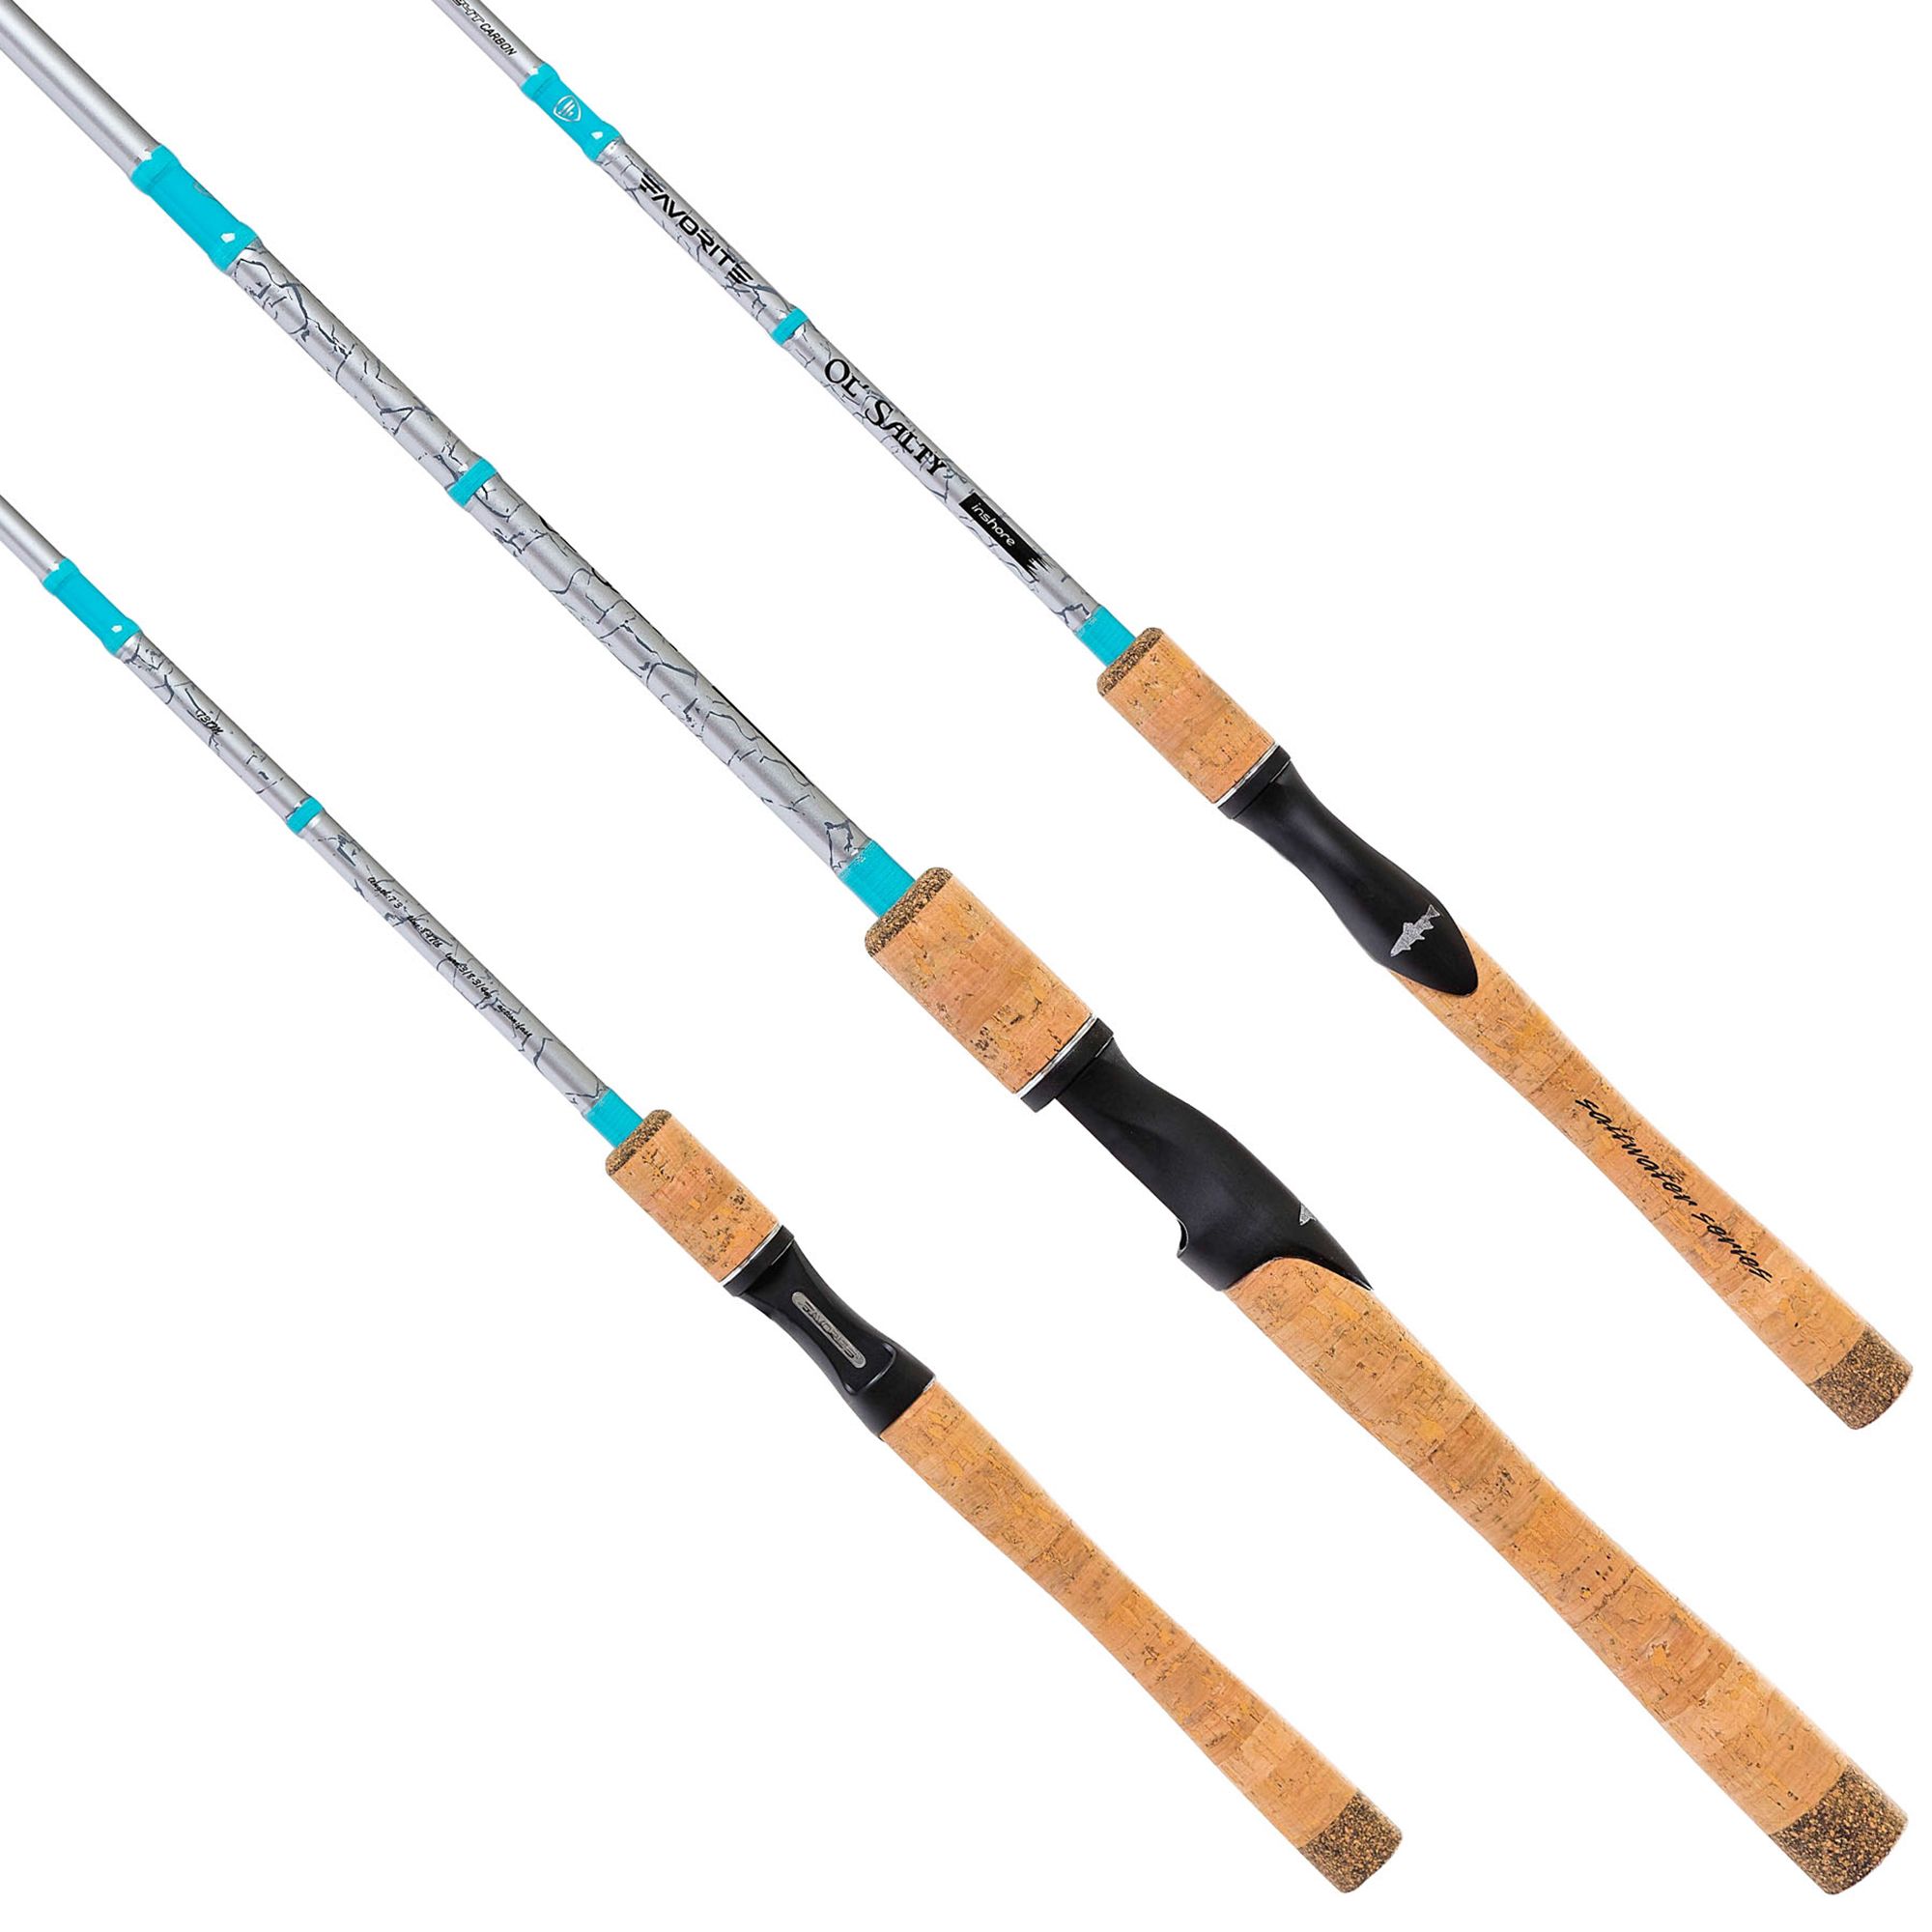 Favorite Fishing Ol' Salty Spinning Rod